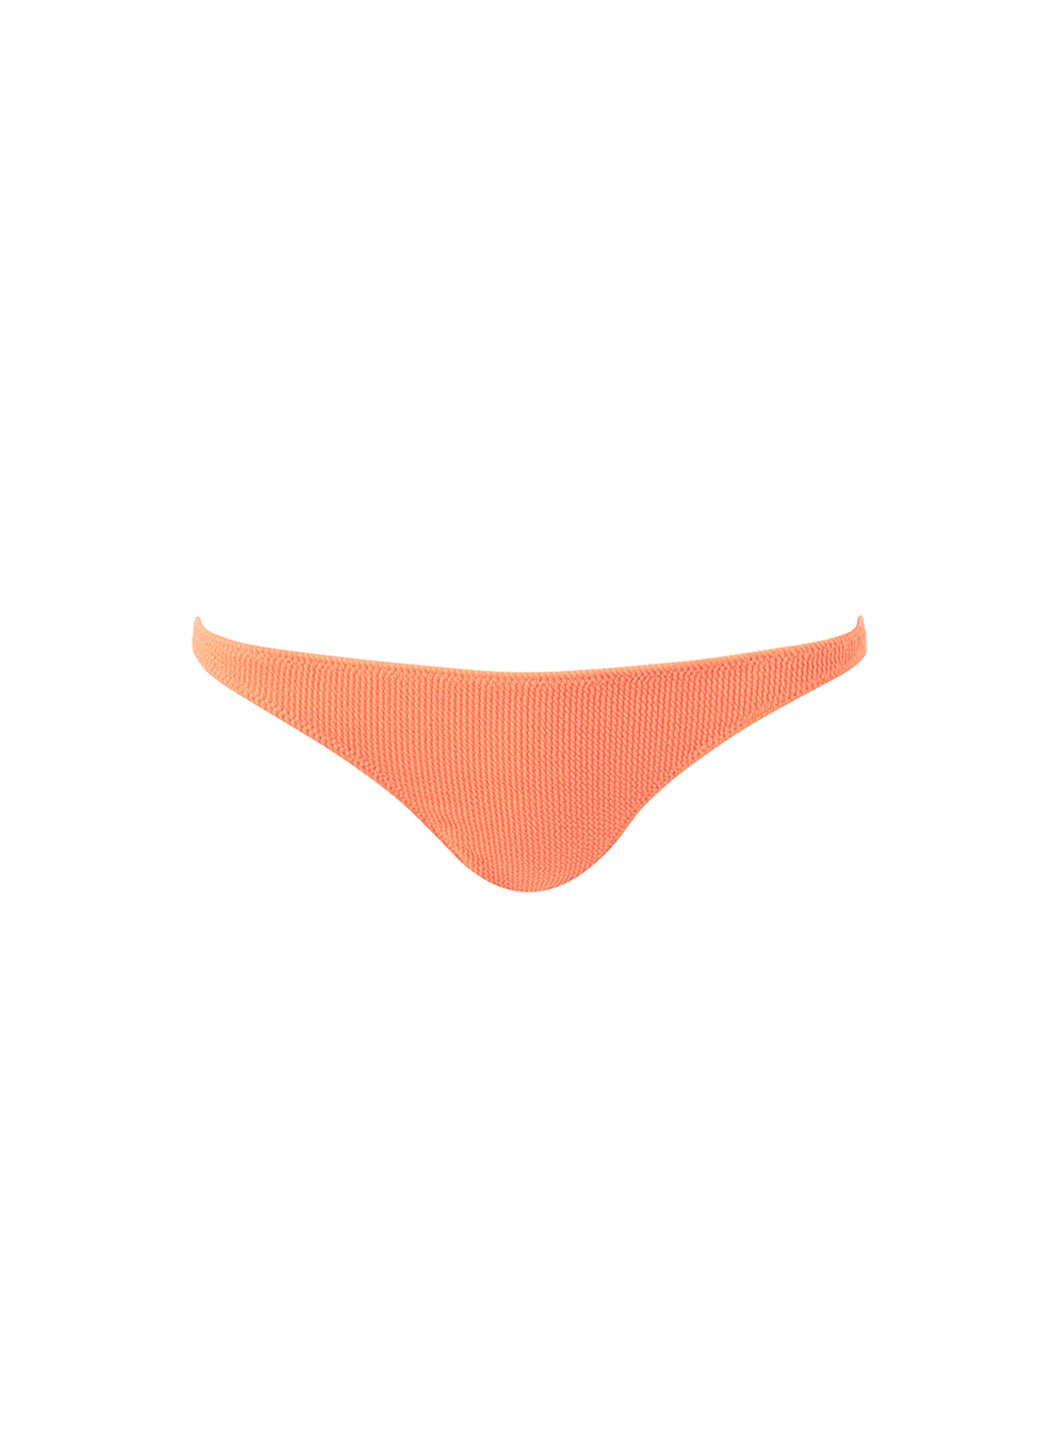 Ponza Orange Ridges Bikini Bottom 2024 Cutout